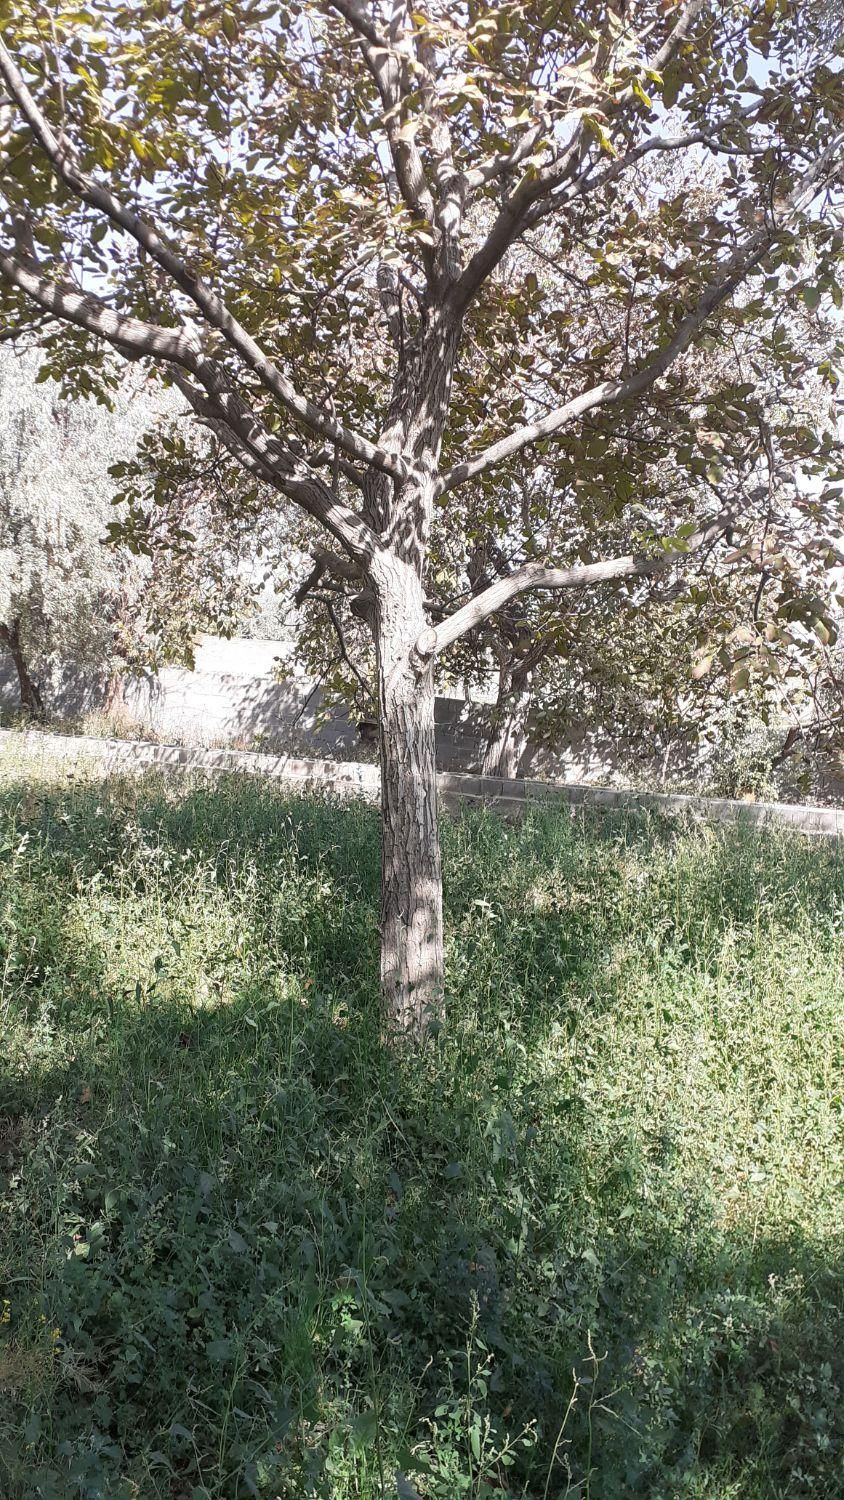 خریدانوع درخت و هرس کردن درخت درباغات|خدمات باغبانی و درختکاری|آذرشهر, |دیوار